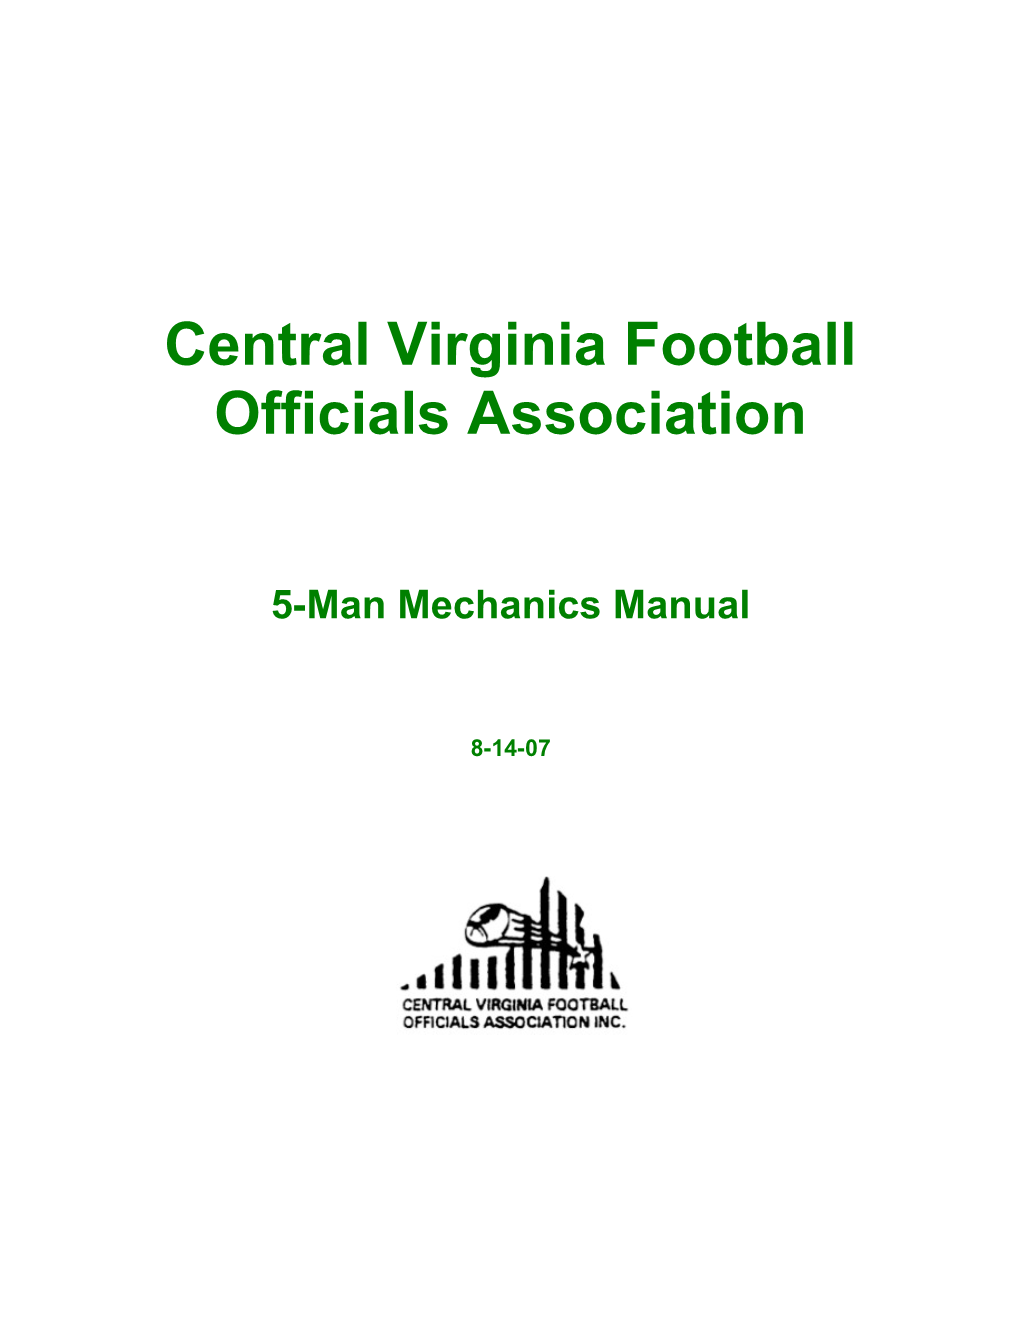 Central Virginia Football Officials Association